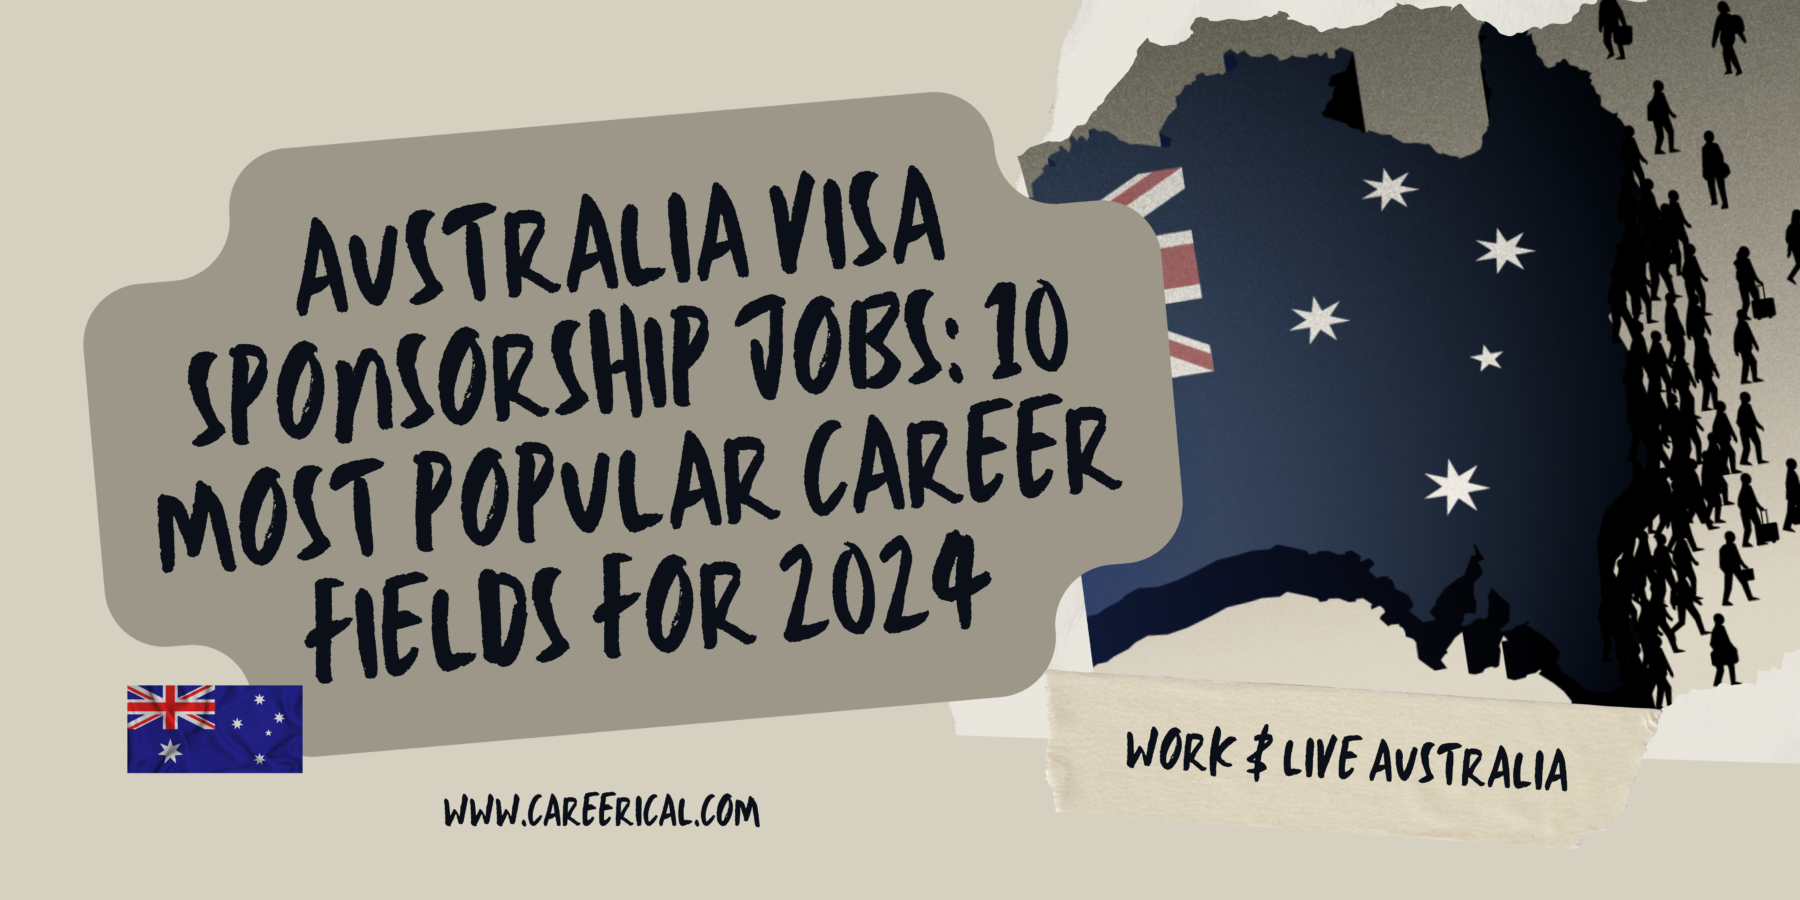 Australia Visa Sponsorship Jobs 10 Most Popular Career Fields for 2024